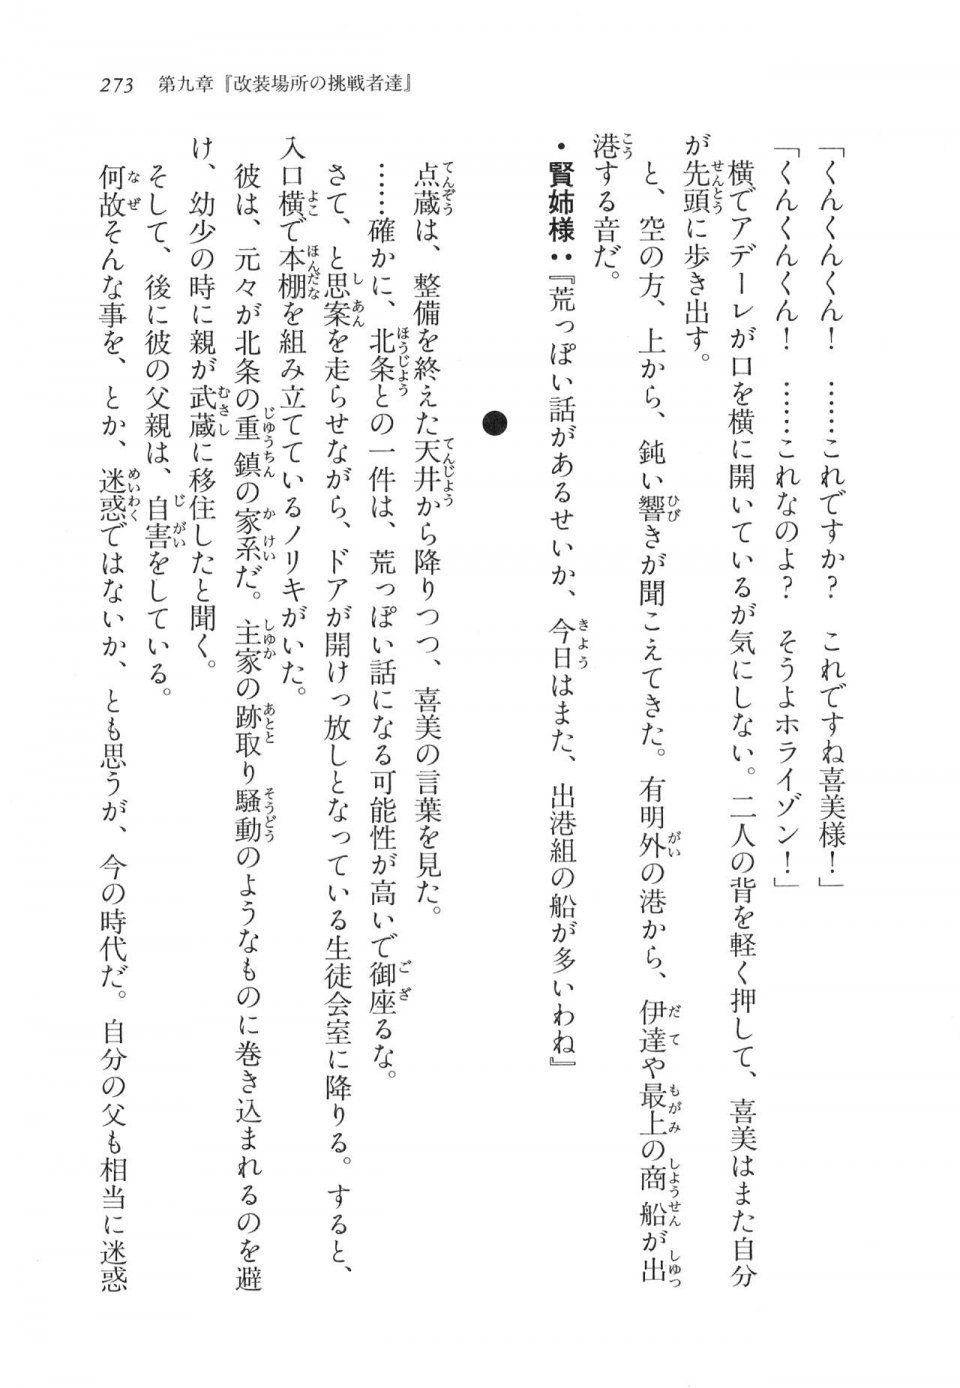 Kyoukai Senjou no Horizon LN Vol 11(5A) - Photo #273